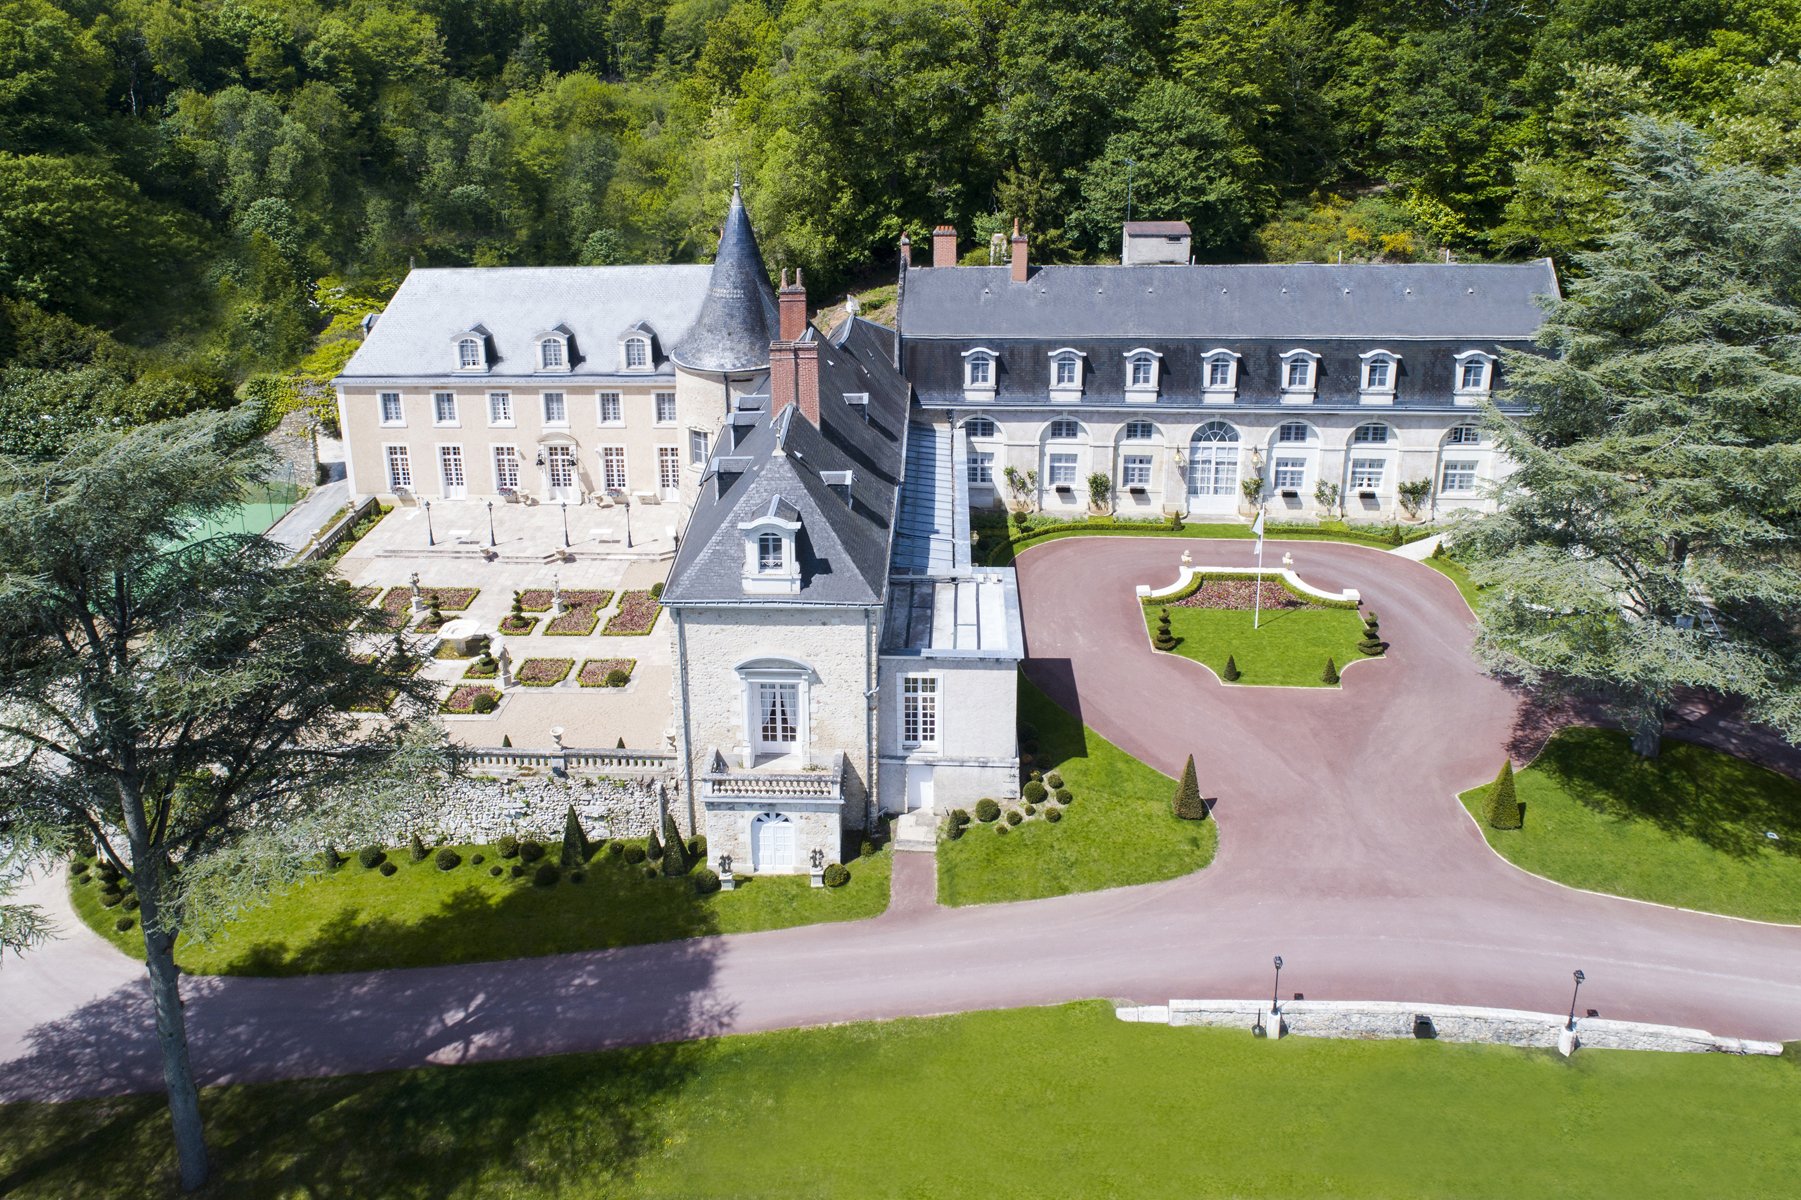 Château de Beauvois | Hotel 4 étoiles, restaurant gastronomique, piscine extérieur | En Val de Loire, à 20 min de Tours, France